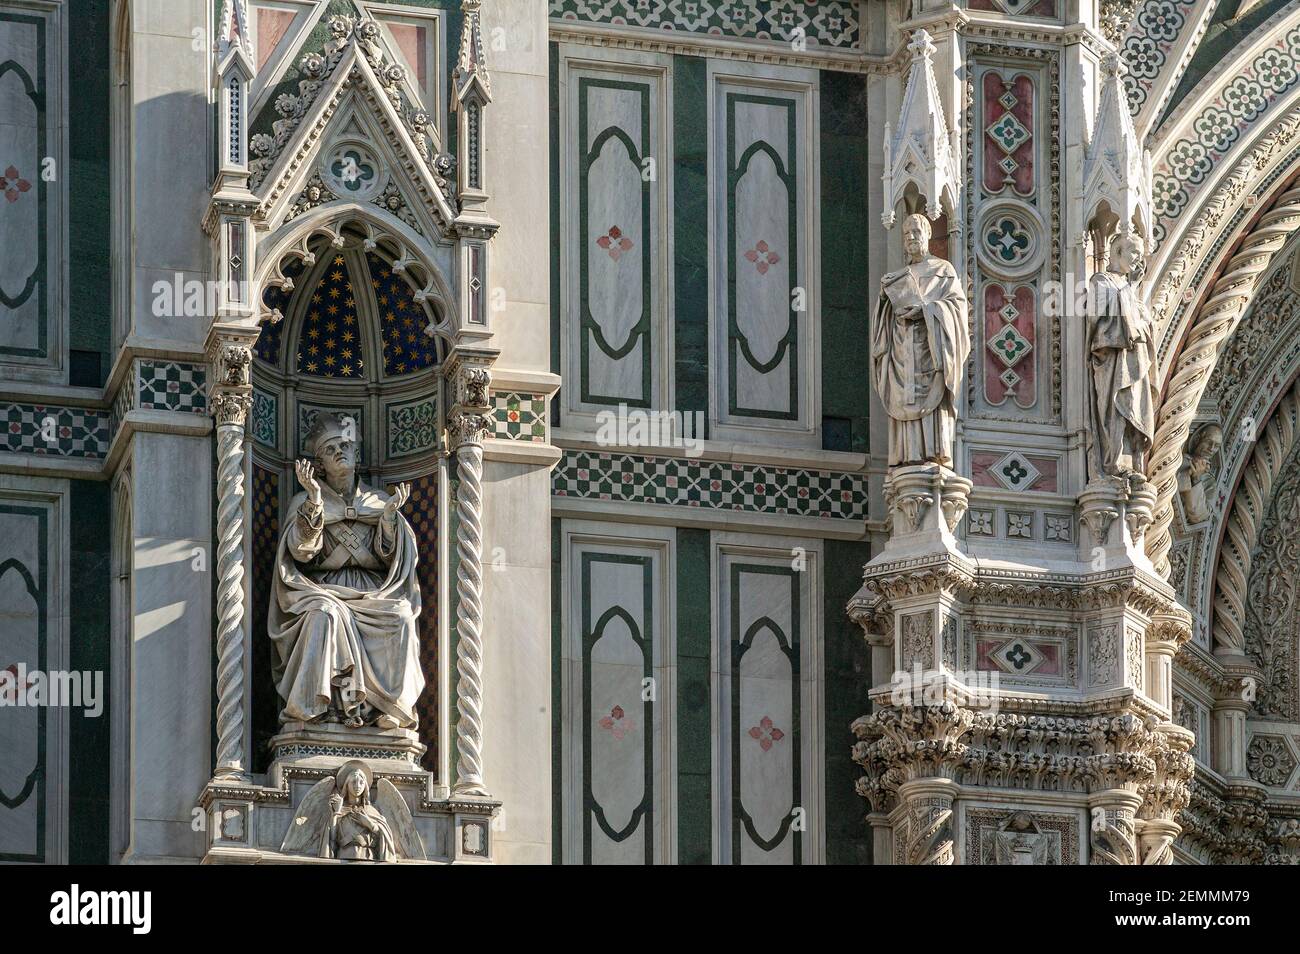 Particolare delle statue e delle decorazioni che adornano la facciata della cattedrale di Santa Maria del Fiore. Firenze, Toscana, Italia, Europa Foto Stock